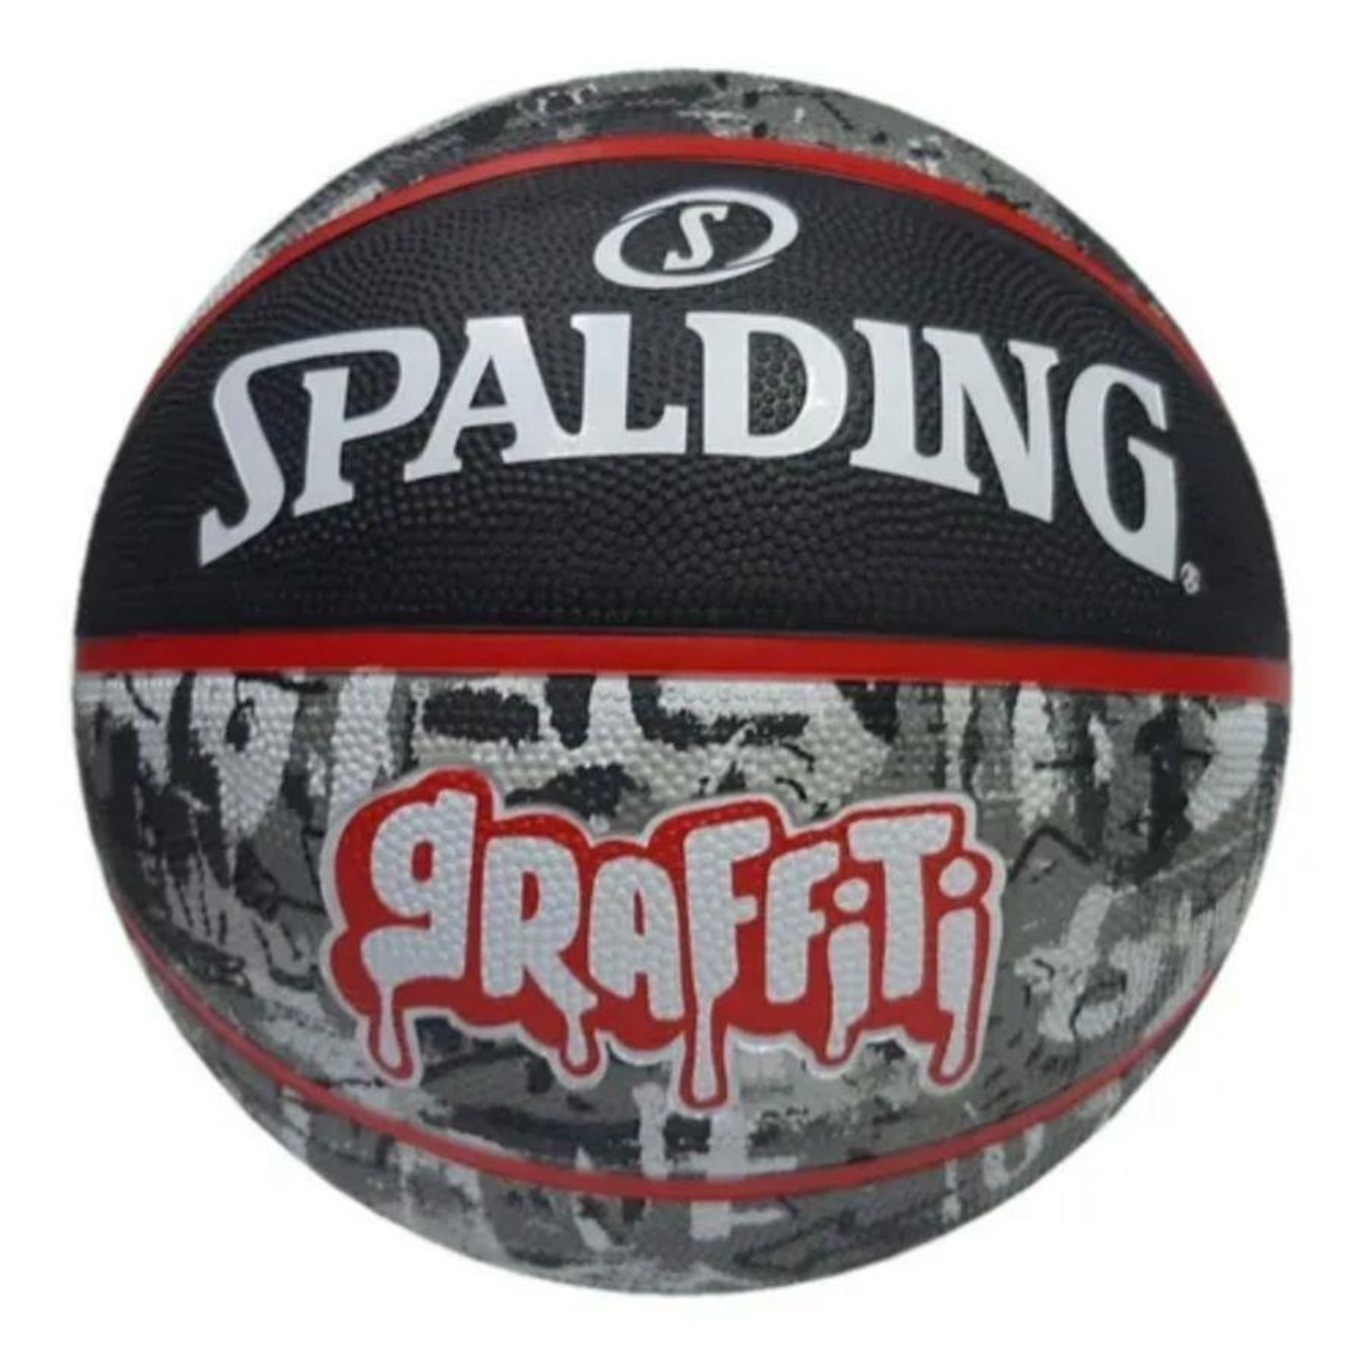 Bola de Basquete Spalding nba Grafite